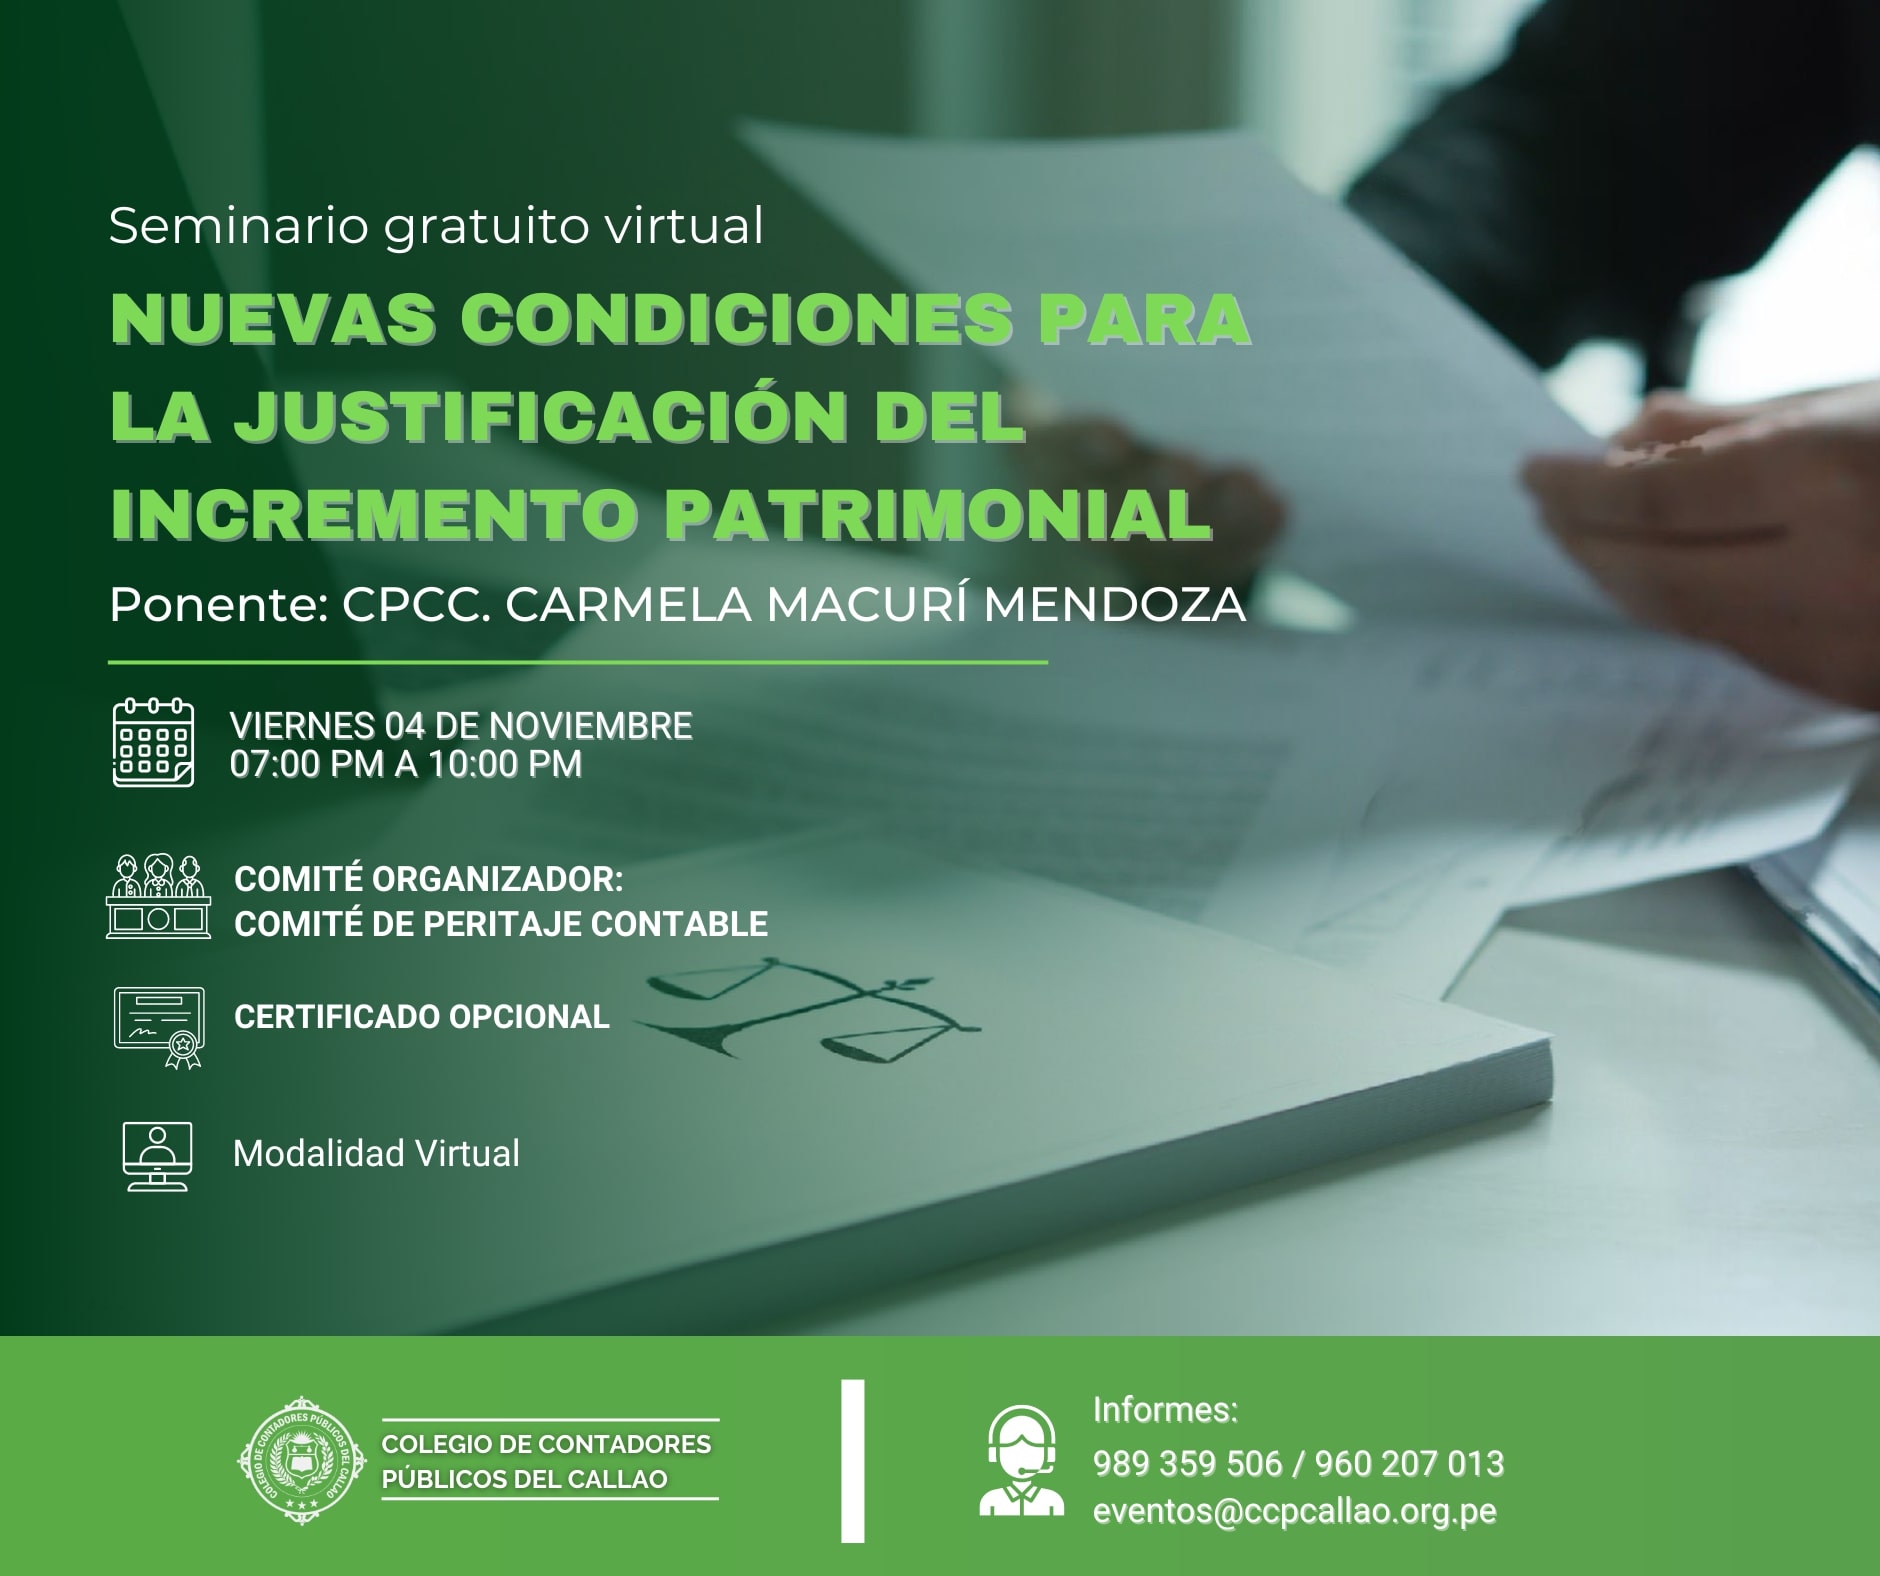 Seminario Gratuito Virtual "NUEVAS CONDICIONES PARA LA JUSTIFICACIÓN DEL INCREMENTO PATRIMONIAL"